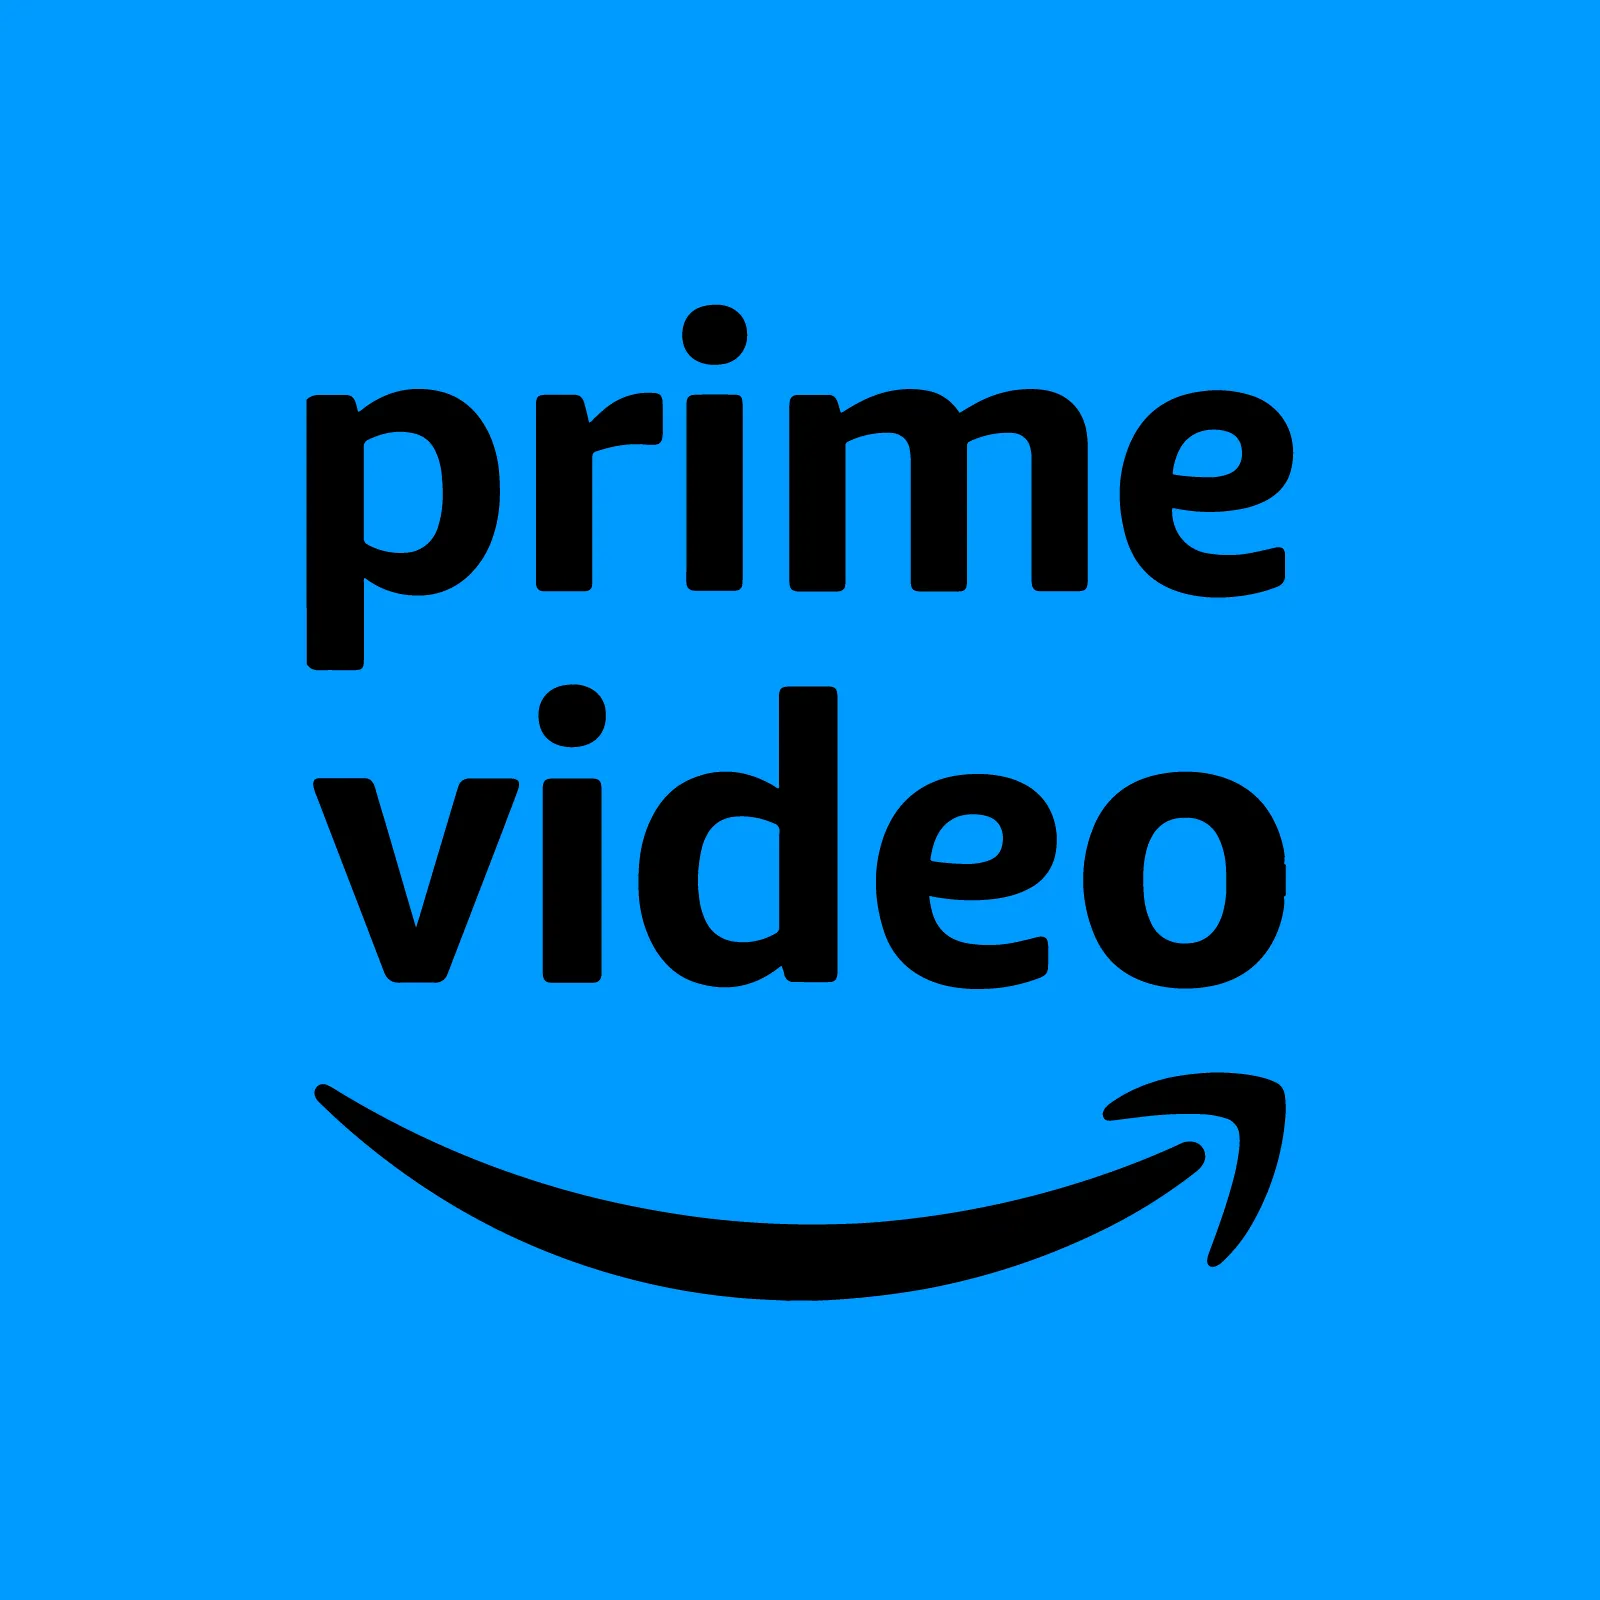 logo Amazon Prime